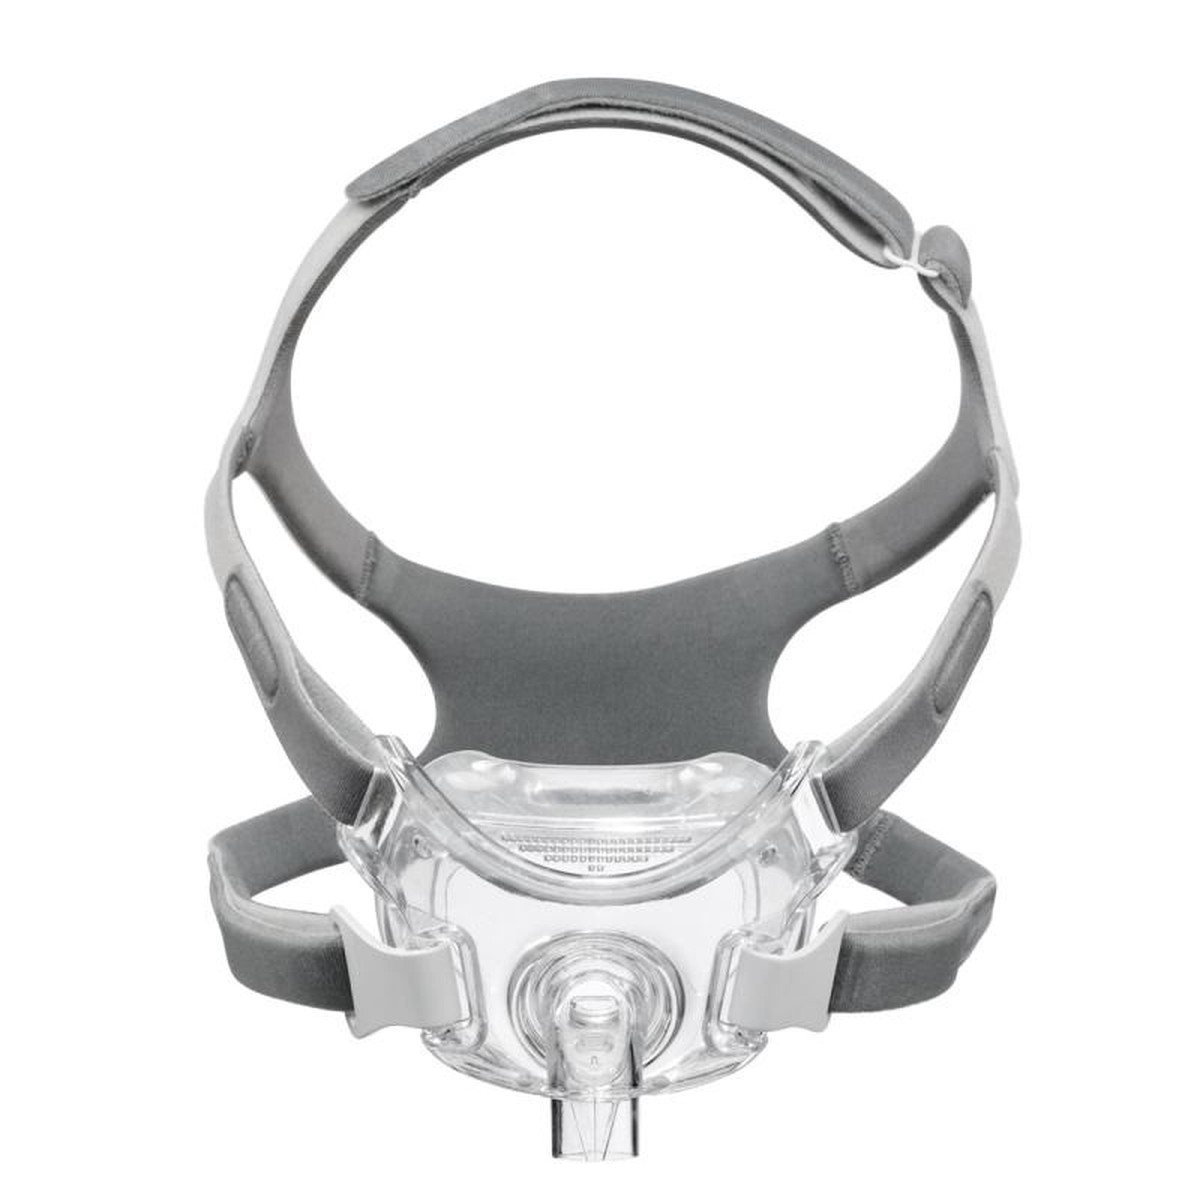 Foto do produto Máscara facial Amara View - Philips Respironics